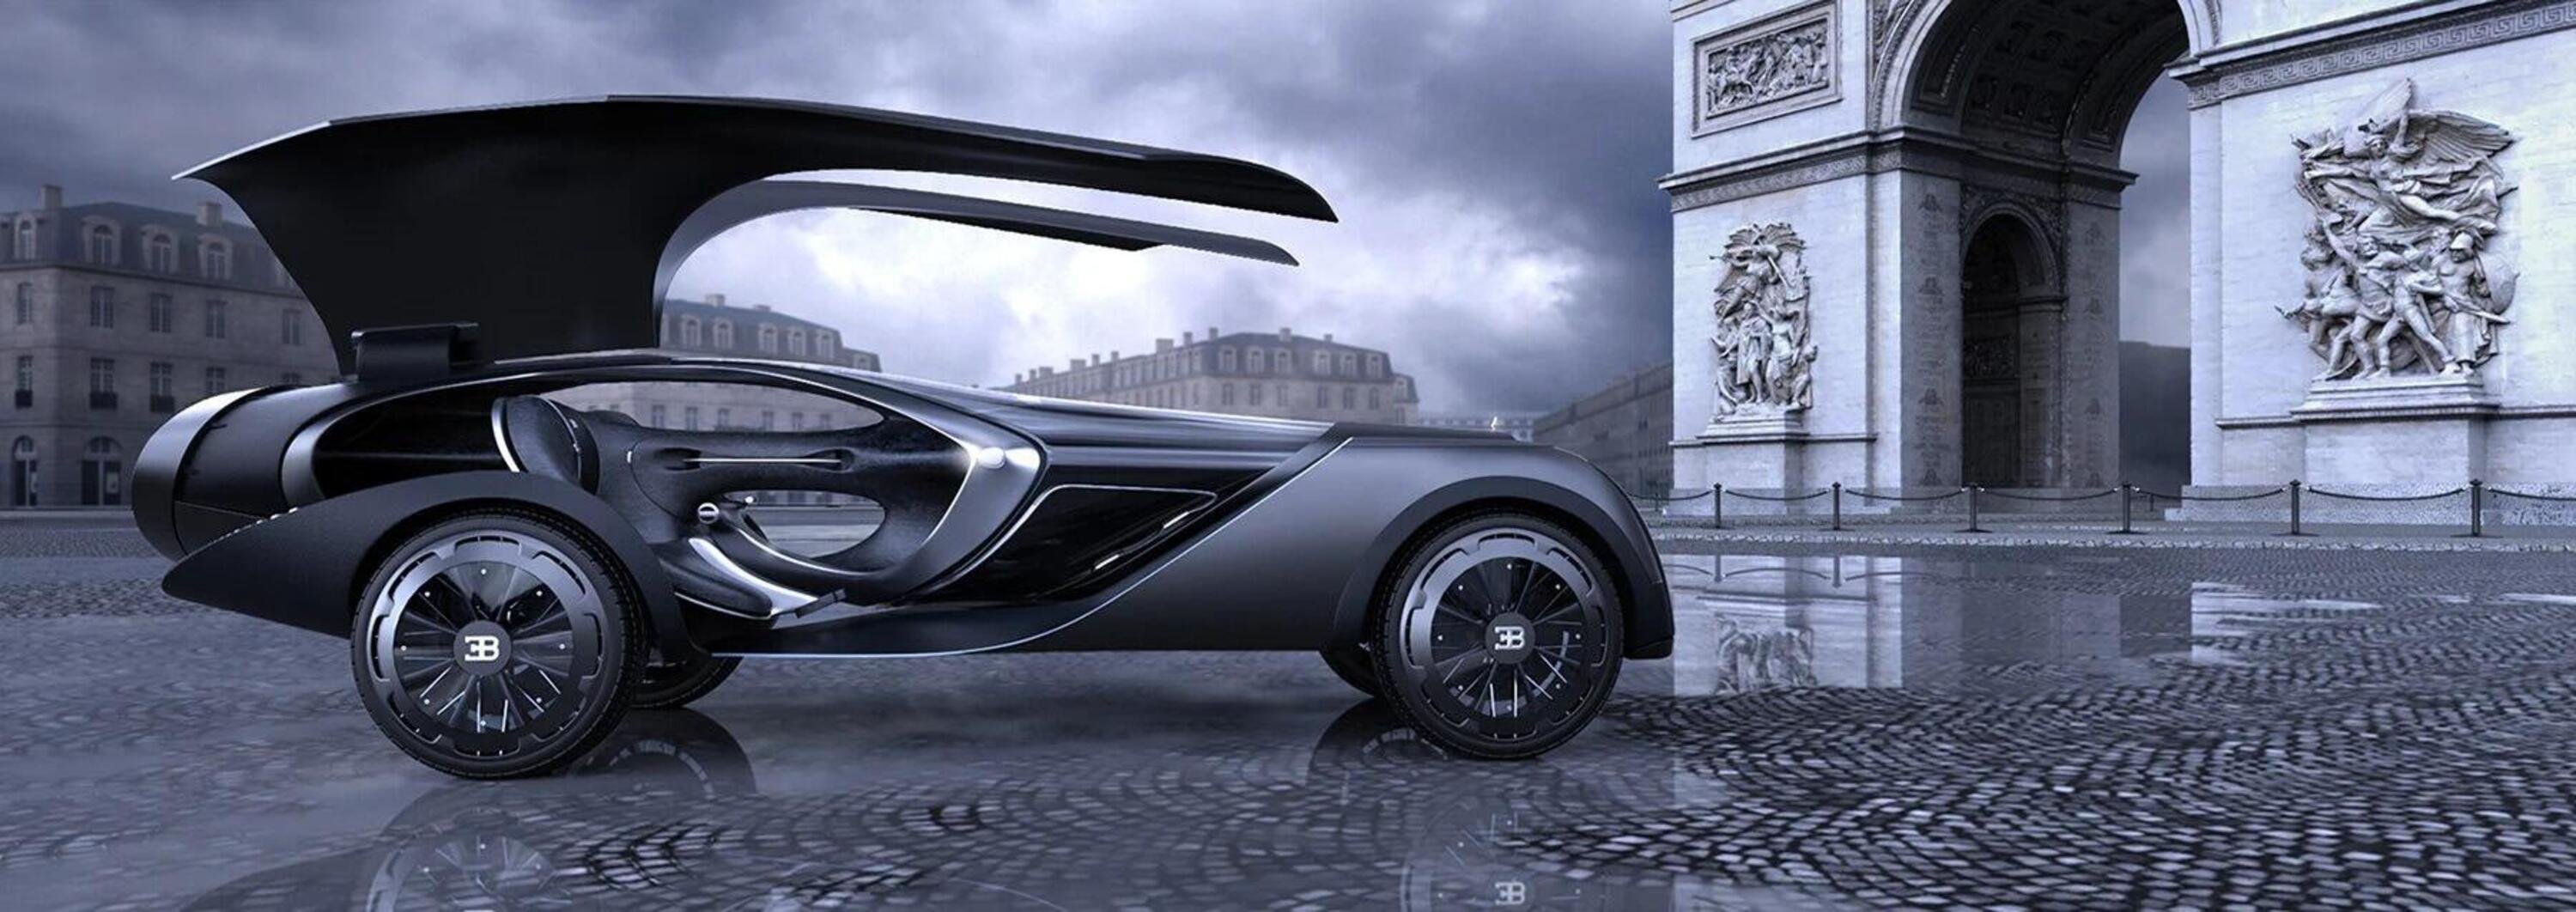 Bugatti La Belle &Eacute;poque: fantasia per milionari post-pandemia [FCEV]